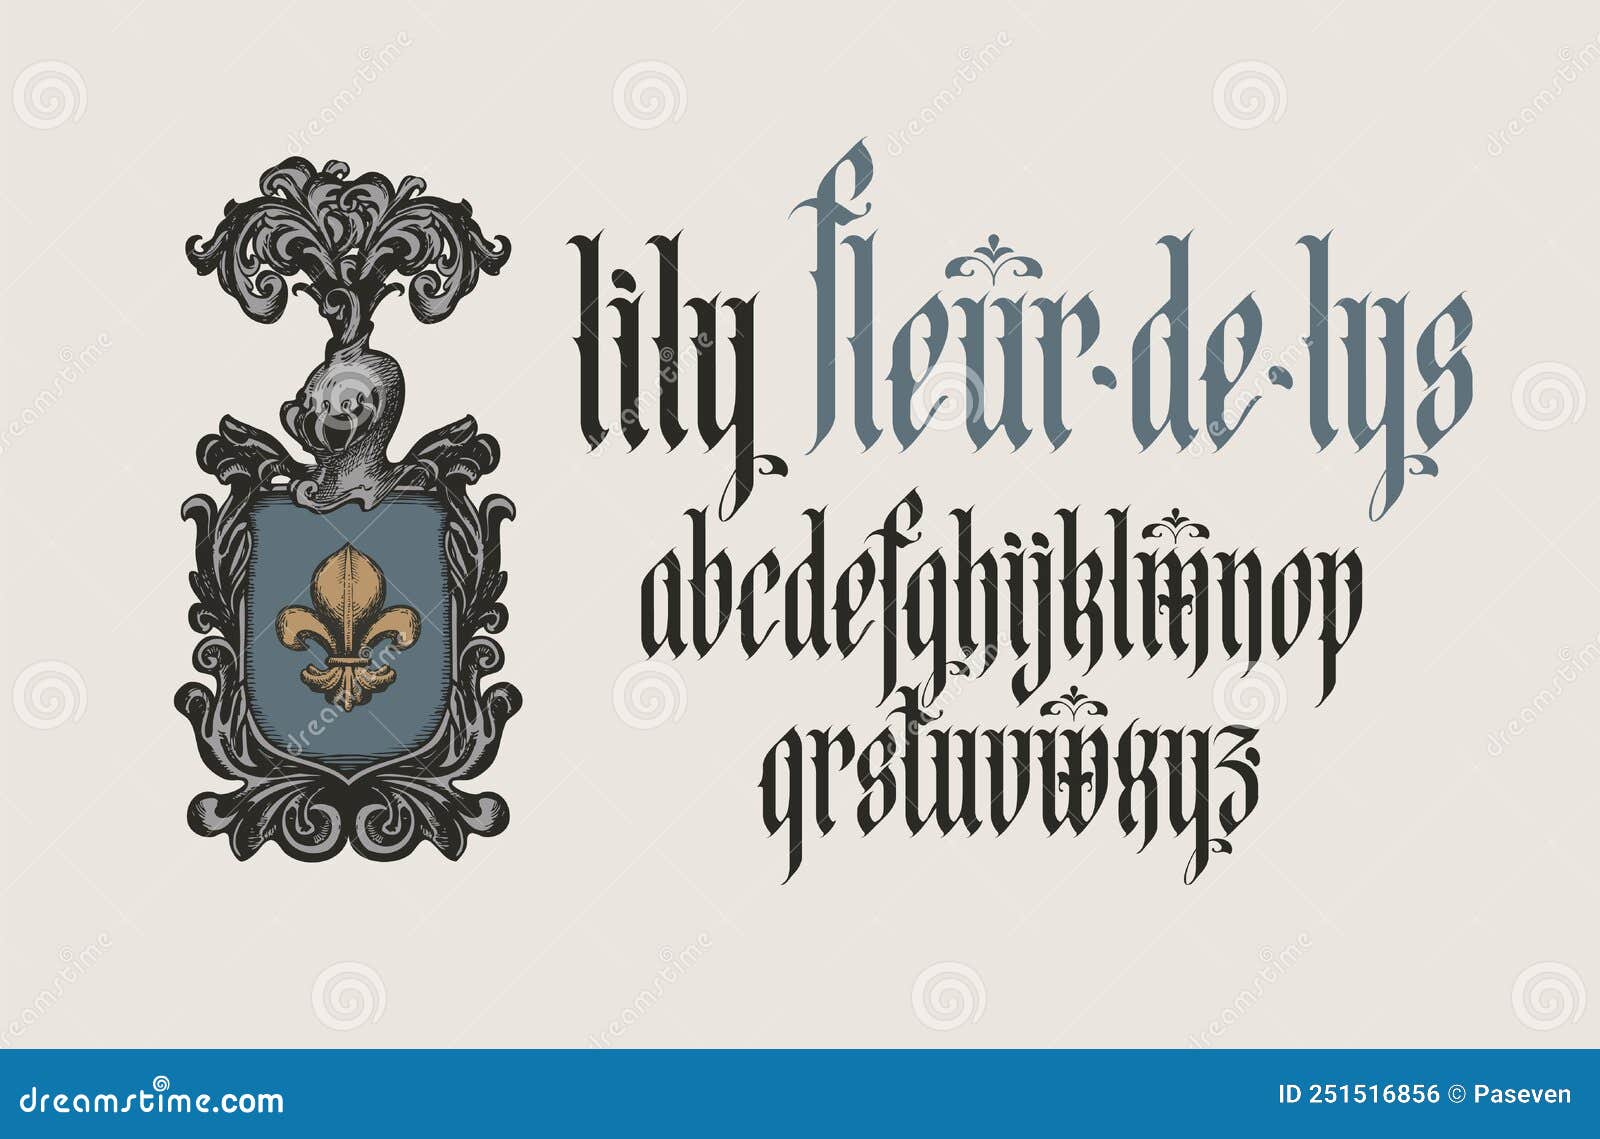 https://thumbs.dreamstime.com/z/gothic-font-inscription-fleur-de-lys-coat-arms-lily-knight-s-helm-full-set-letters-english-alphabet-vintage-251516856.jpg